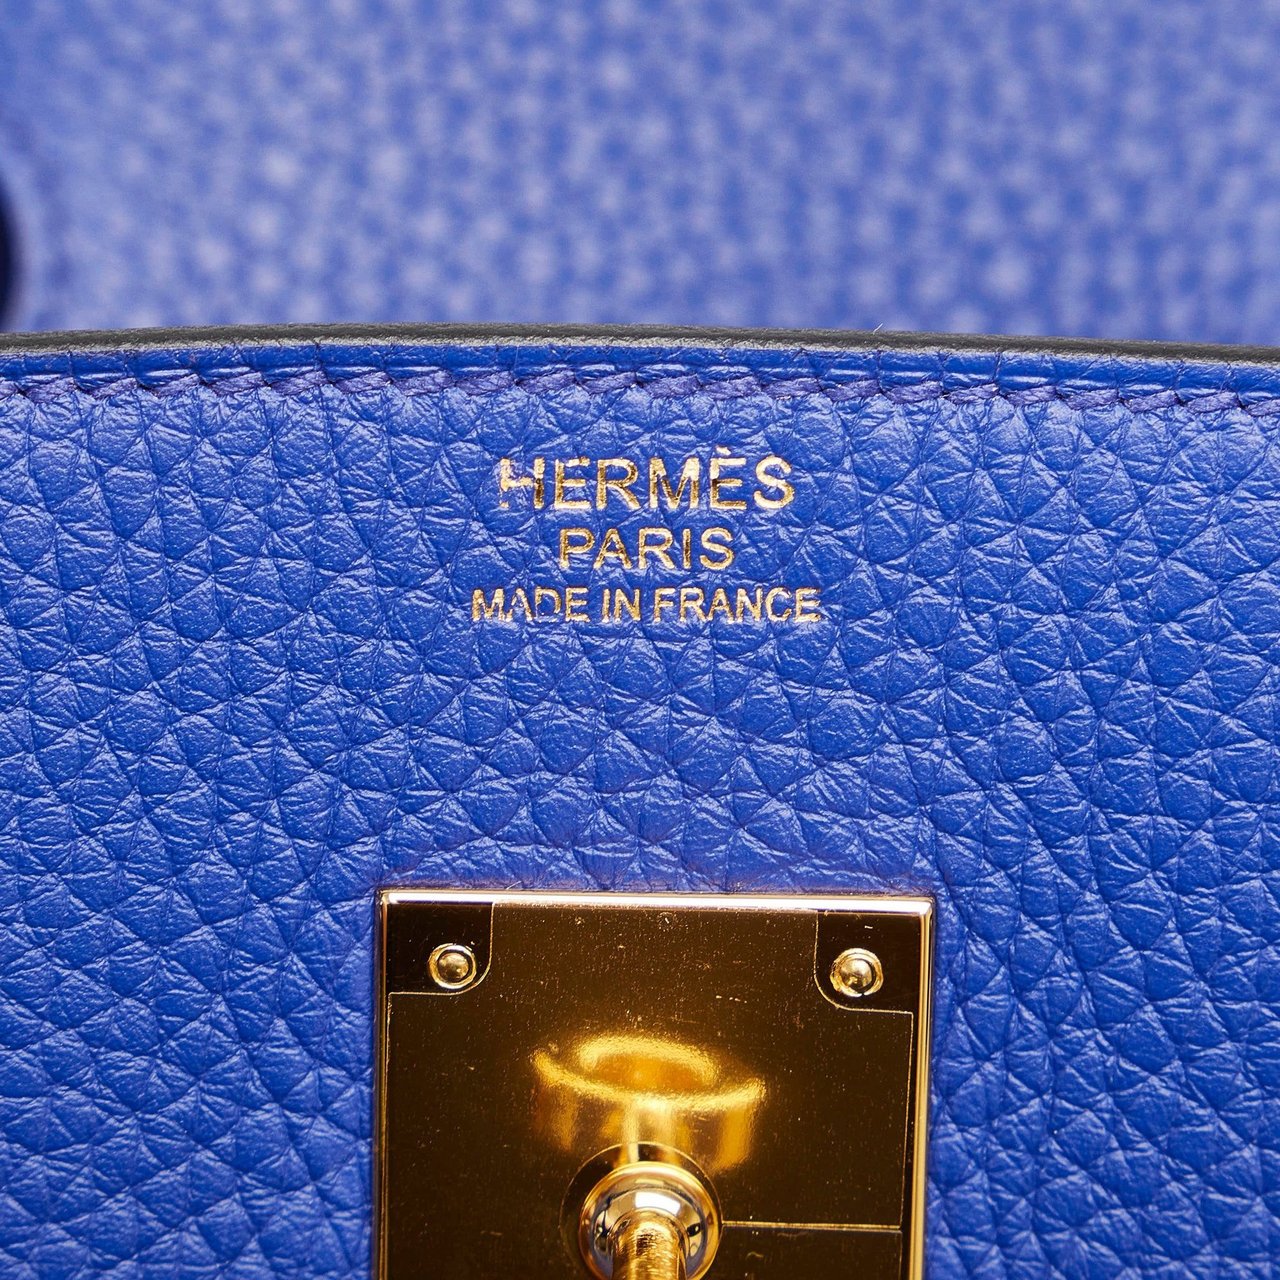 Hermès Taurillon Clemence Birkin 30 Blauw